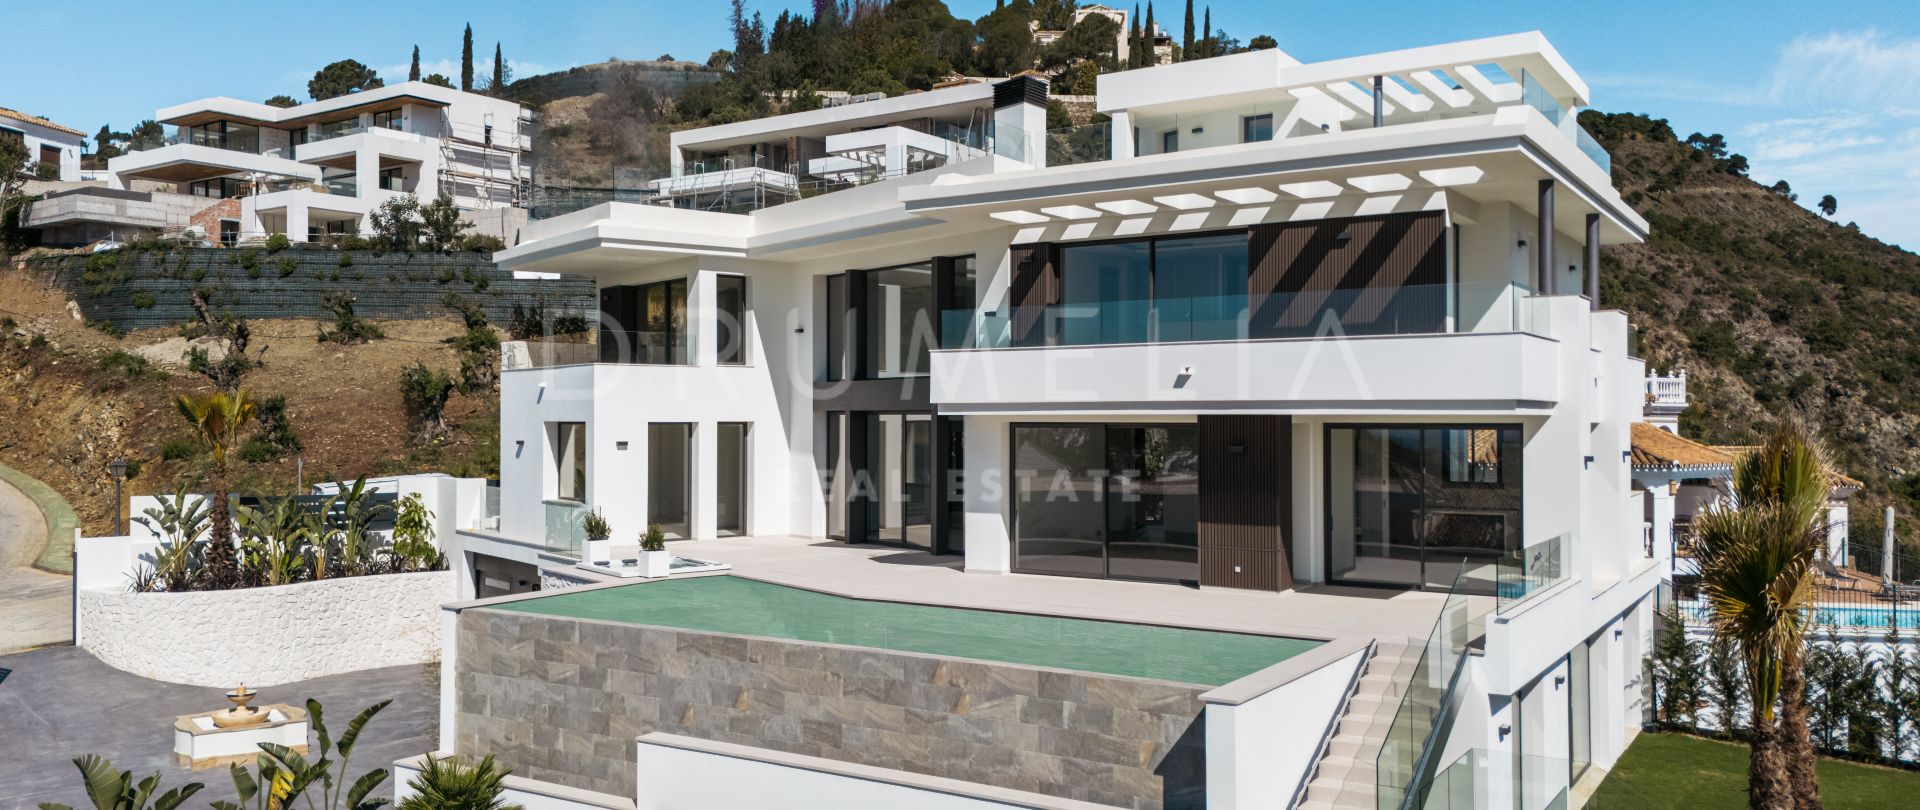 Lomas 10 - Moderne gloednieuwe villa in het prestigieuze Lomas de la Quinta, Marbella met prachtig uitzicht op zee en de bergen